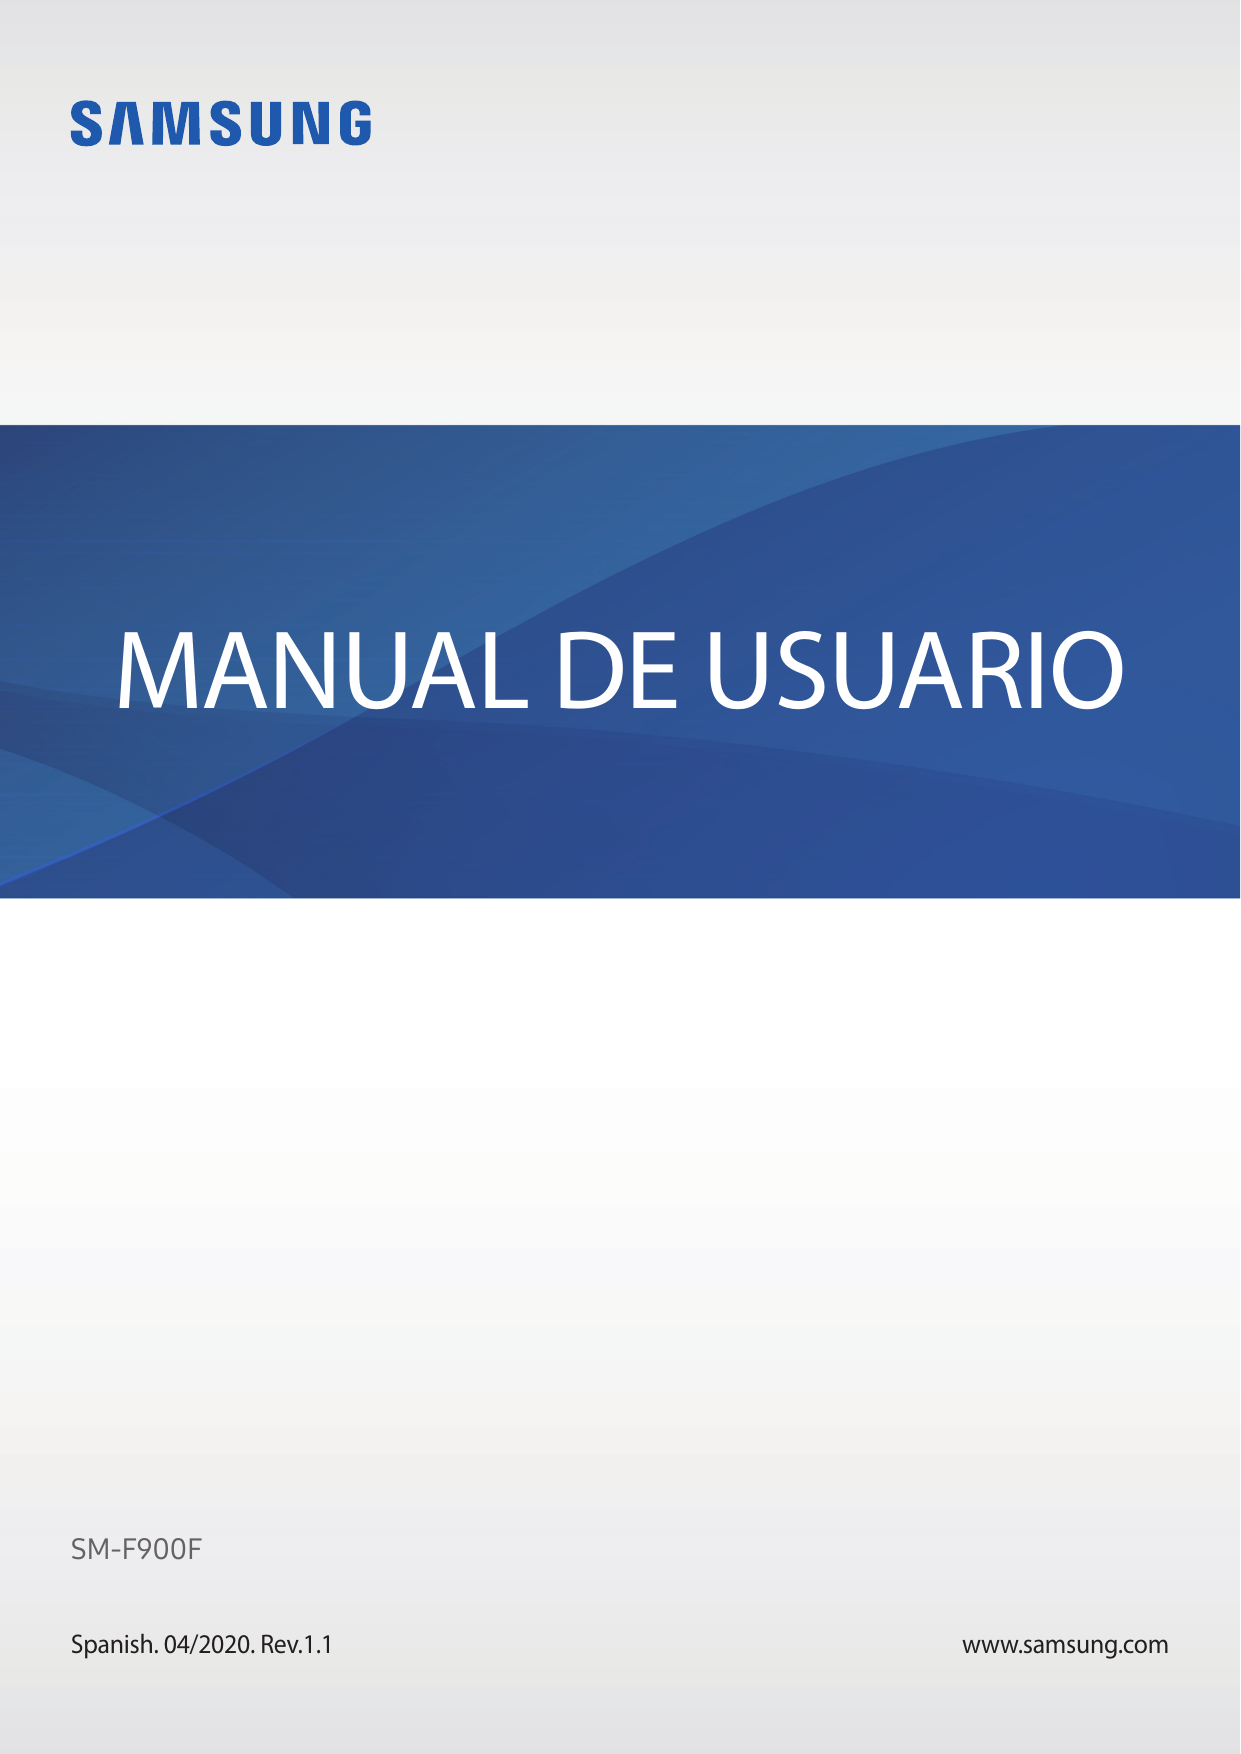 MANUAL DE USUARIOSM-F900FSpanish. 04/2020. Rev.1.1www.samsung.com